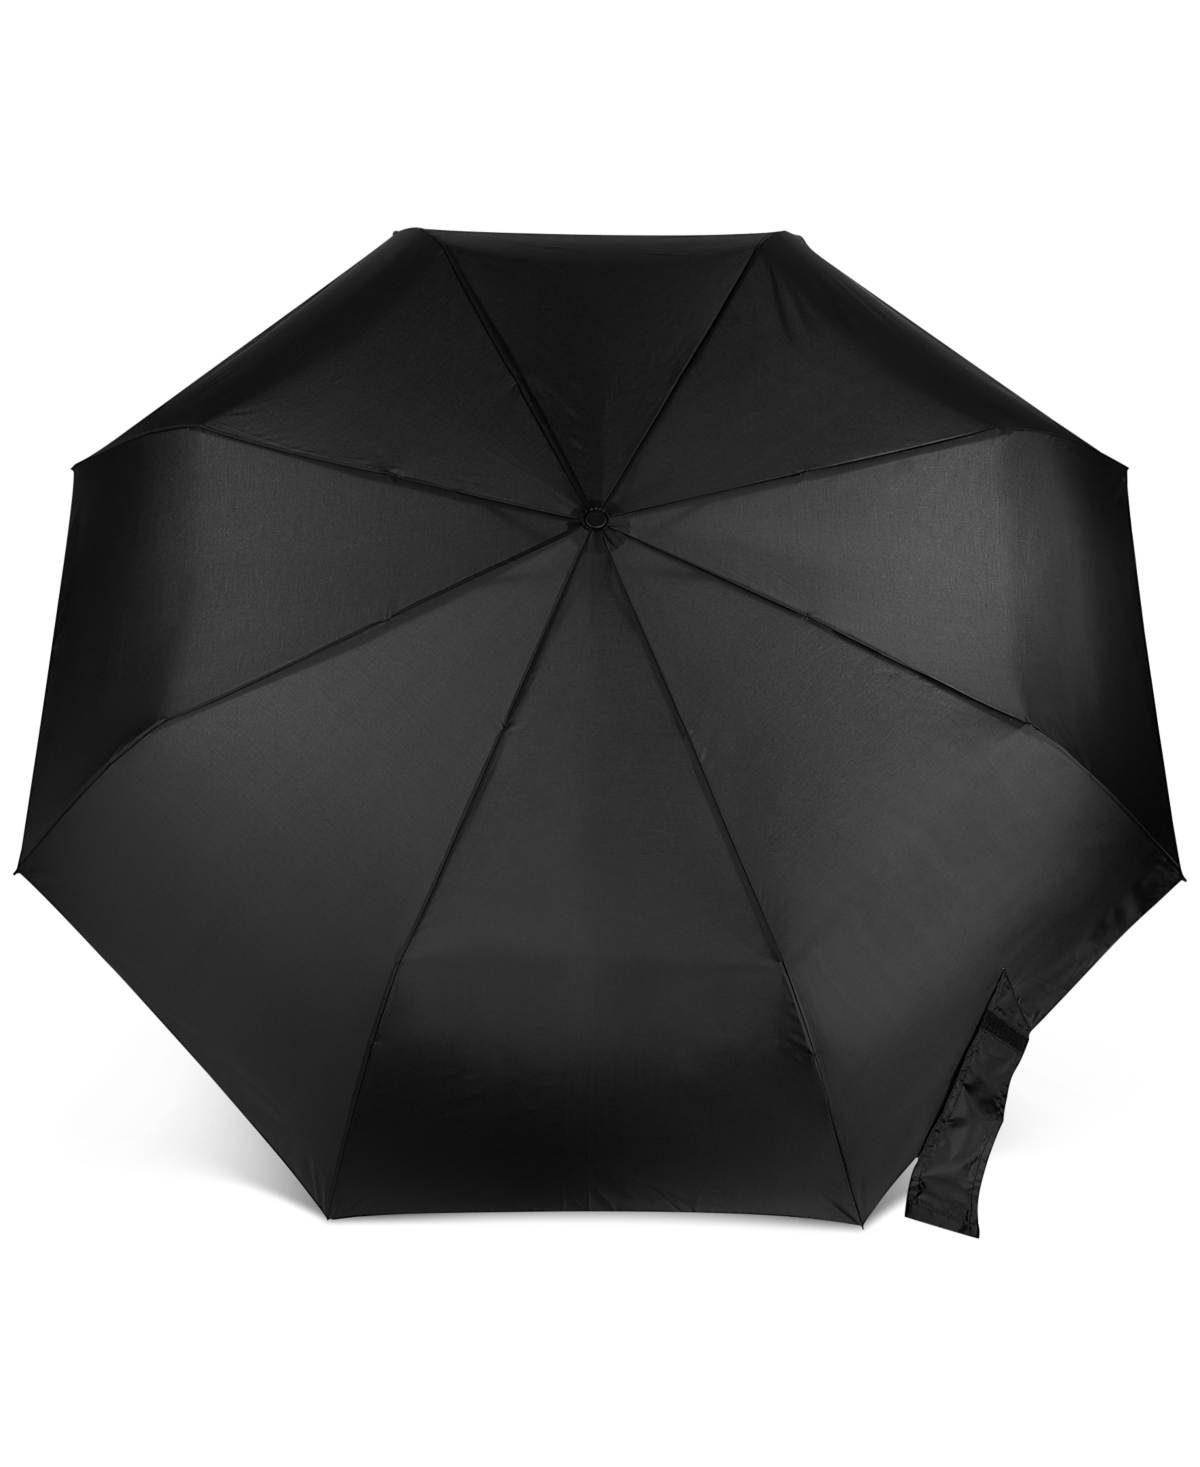 Shop Totes Aoc Golf Size Umbrella In Black,tan